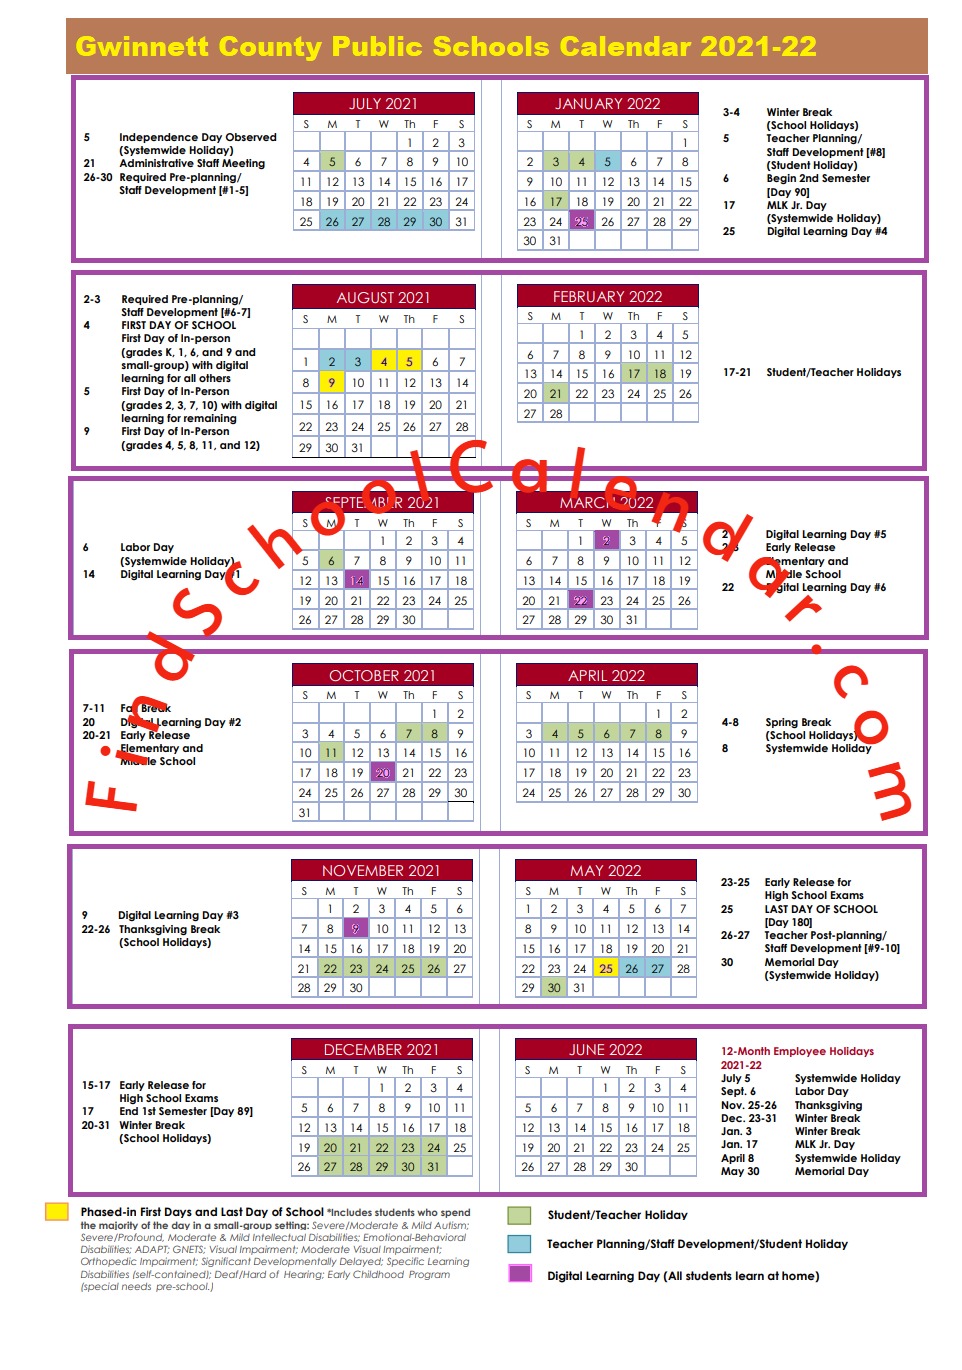 Gcps Calendar 2022 Gwinnett County School Calendar 2021-2022 | Holidays & Break Schedule